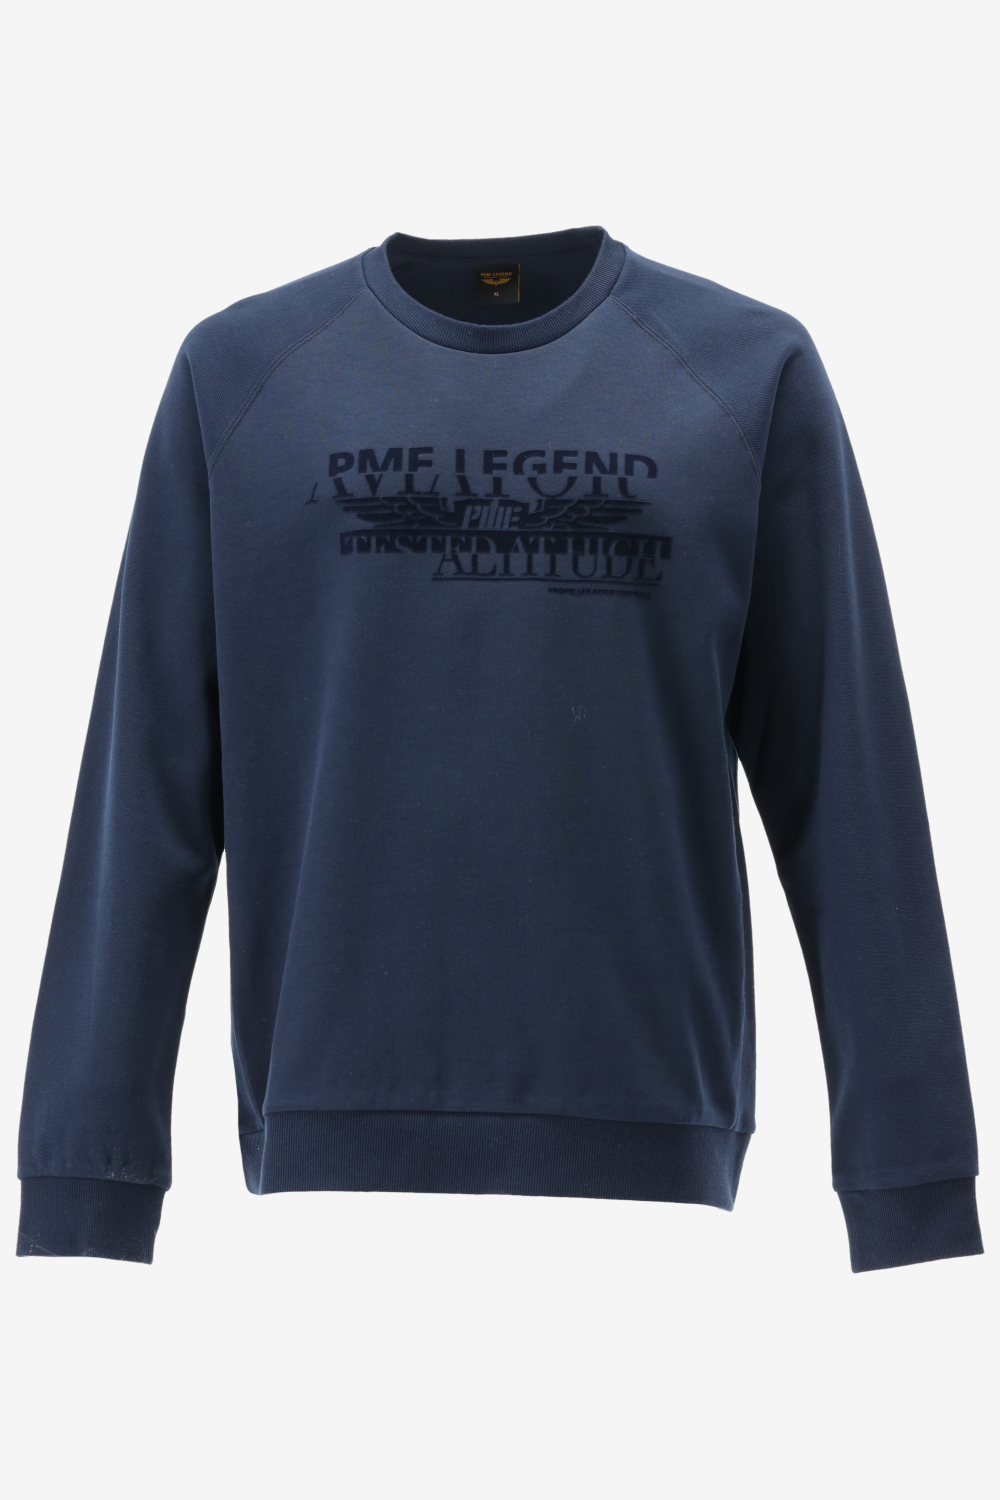 Pme legend sweater maat XXL